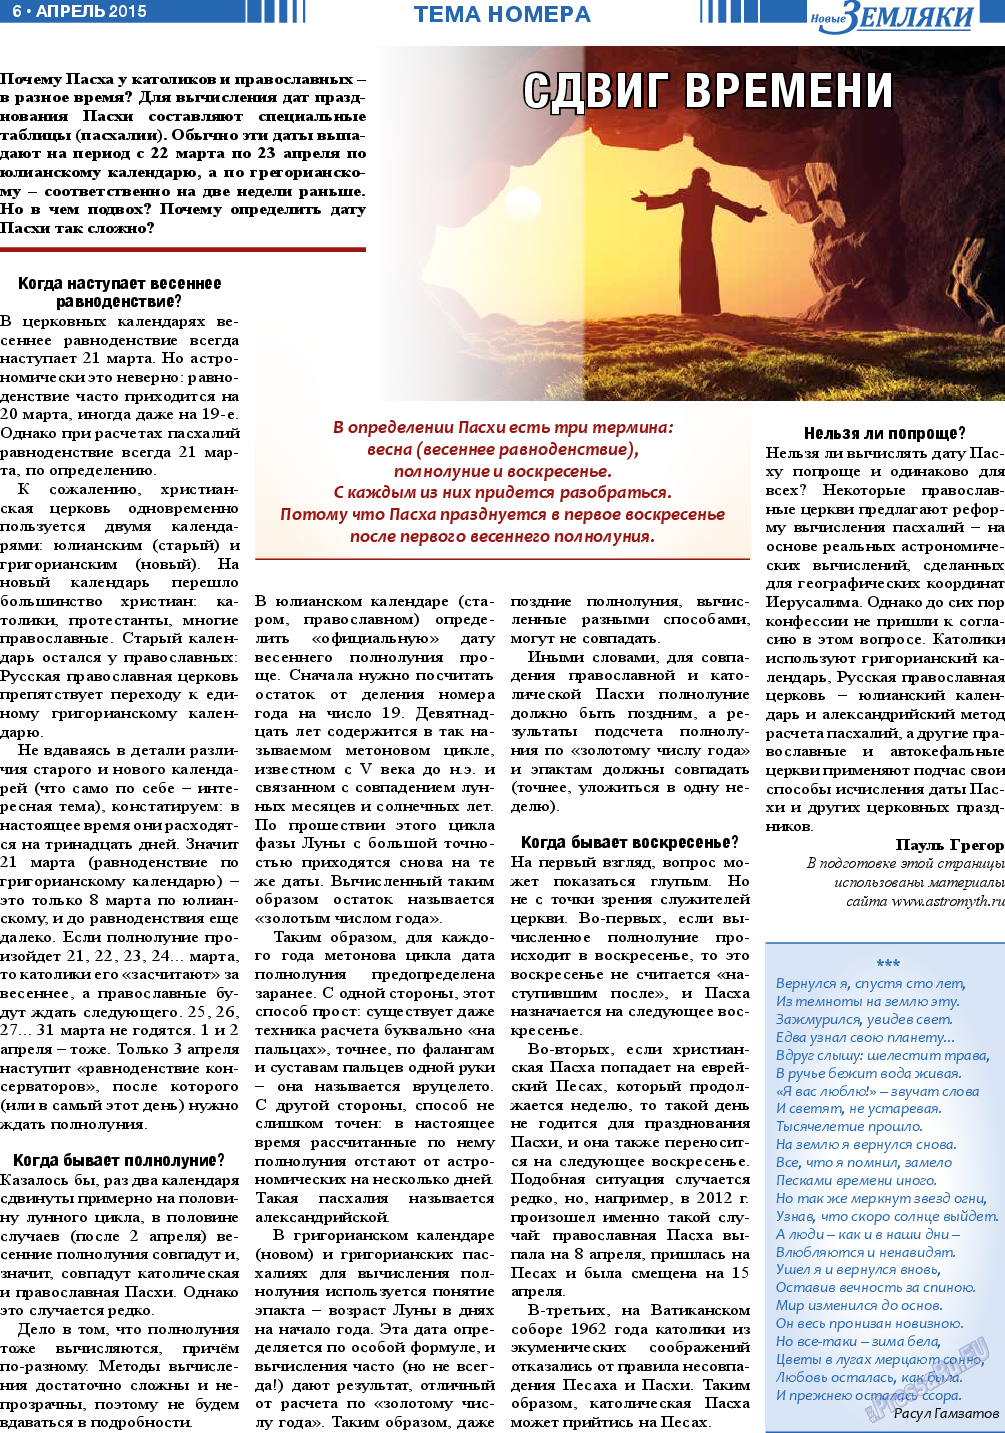 Новые Земляки, газета. 2015 №4 стр.6